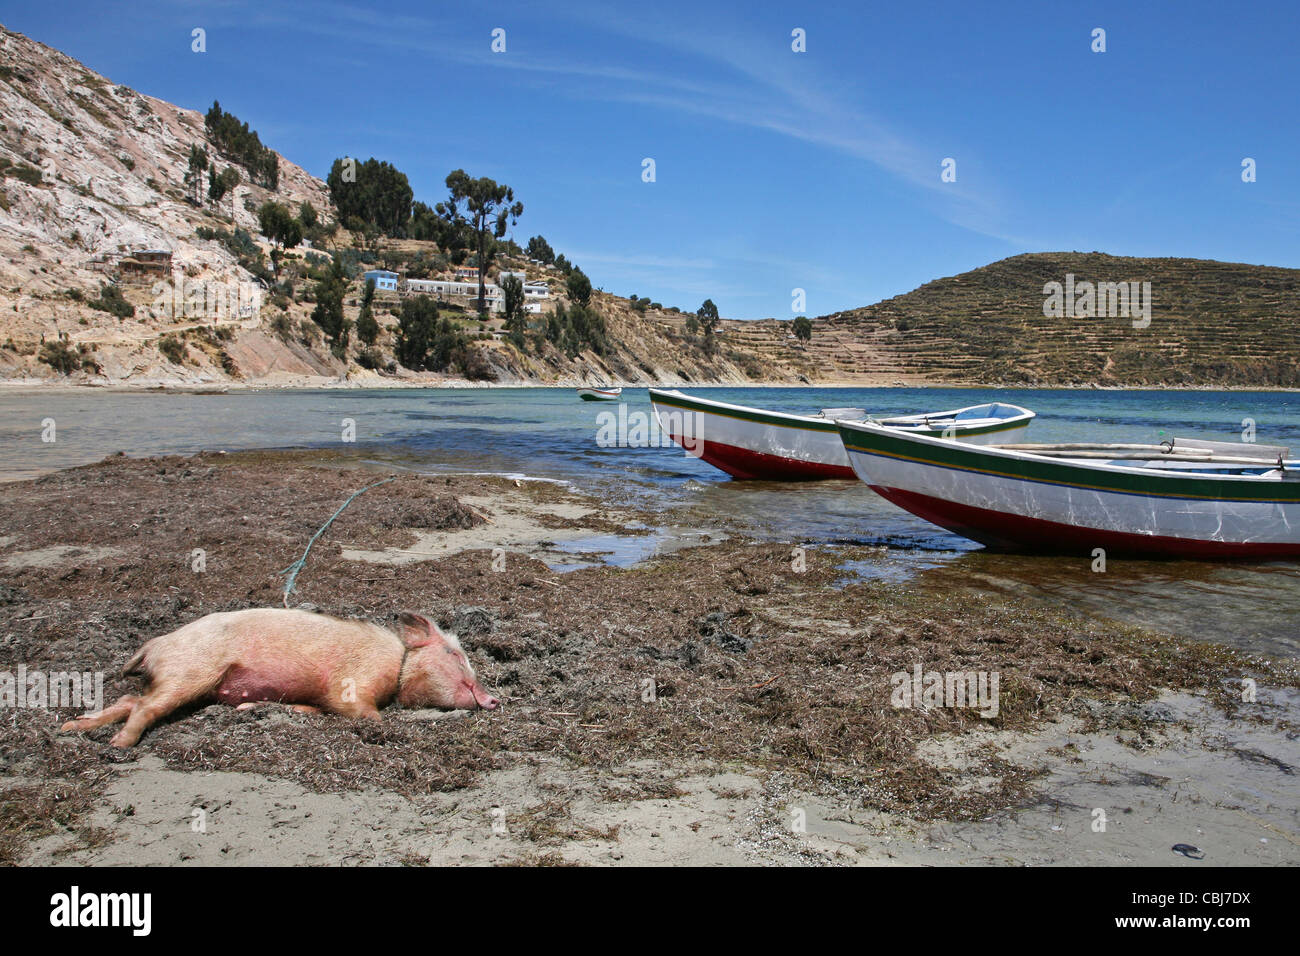 Los barcos de pesca y cerdo durmiendo en la orilla del Lago Titicaca, Isla del Sol, Bolivia Foto de stock